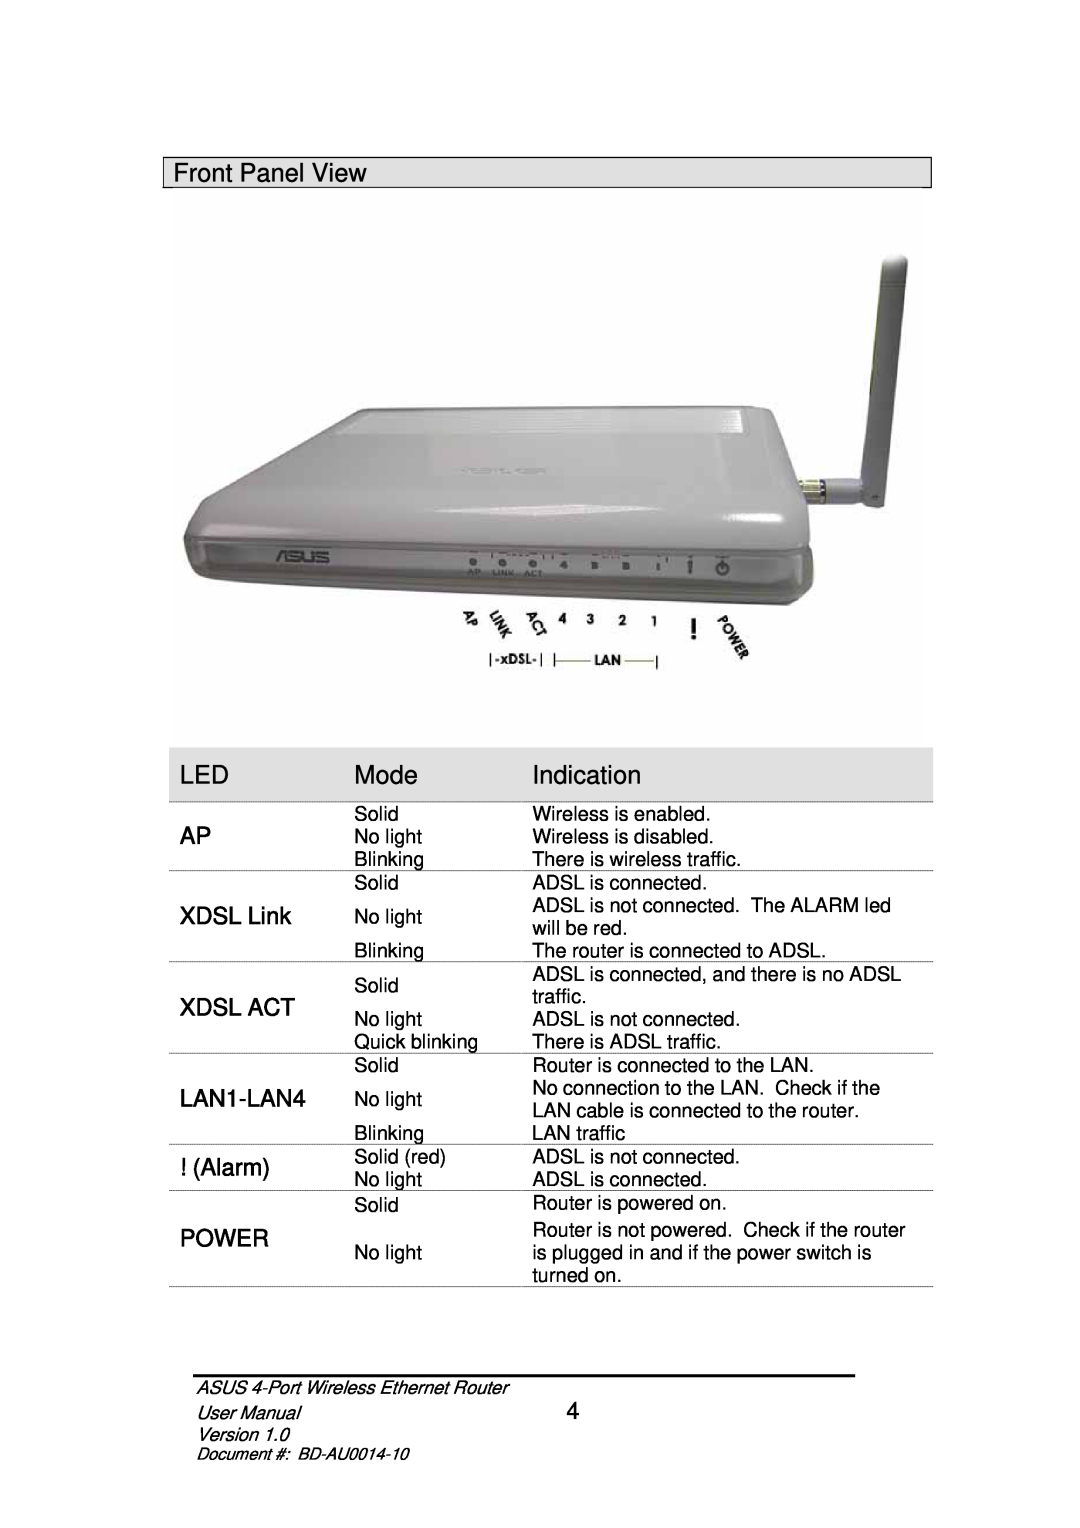 Asus BD-AU0014-10 user manual Front Panel View, LED Mode, Indication, XDSL Link, Xdsl Act, LAN1-LAN4, Alarm, Power 